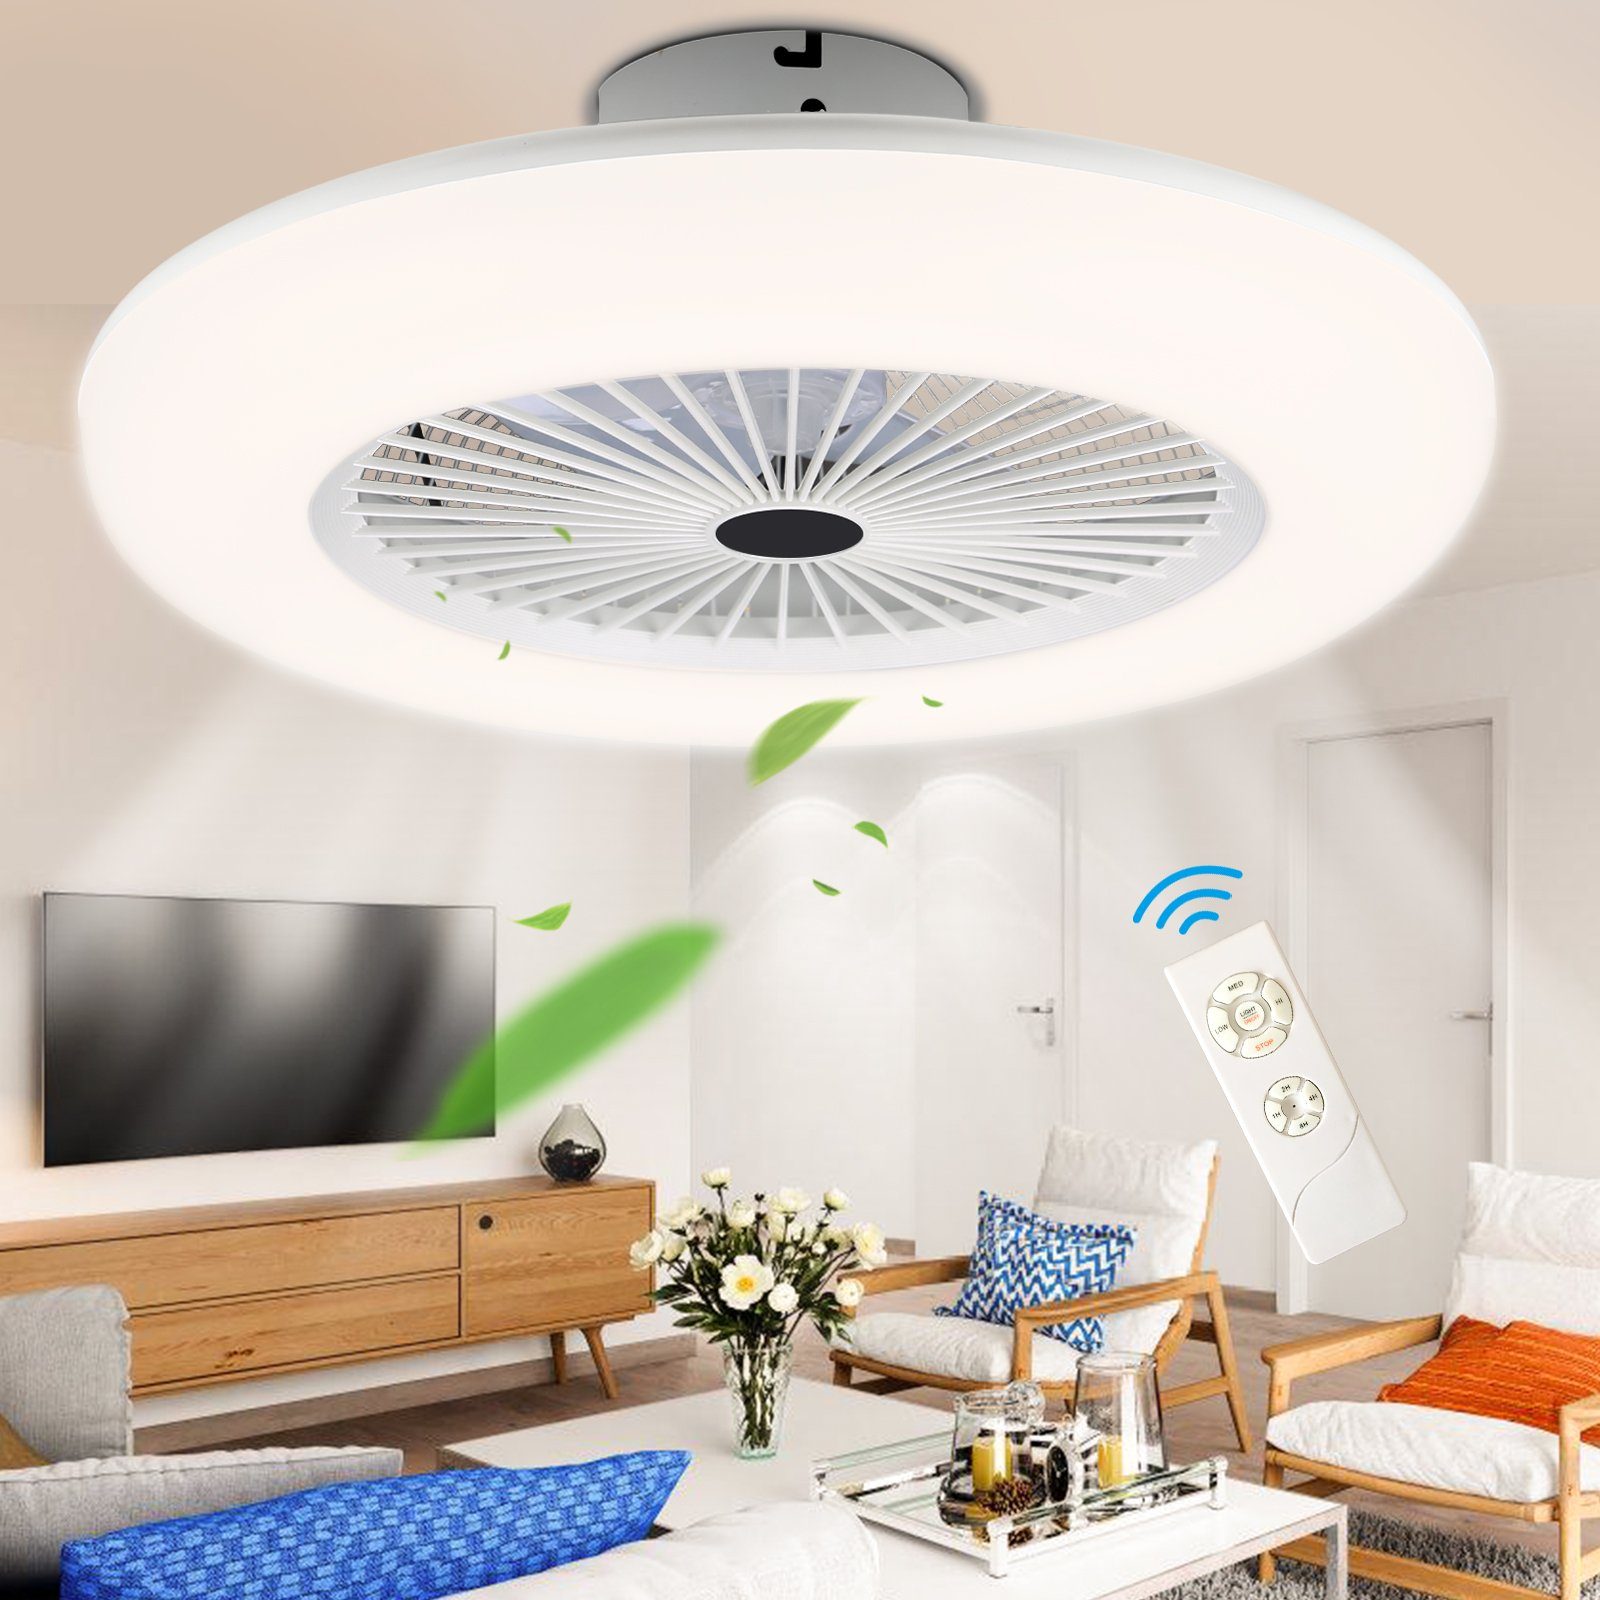 LED Zimmer Fernbedienung Leiser TolleTour Ventilator, Wohn Lüfter und Kühler Zeitmessung 80W Mit Deckenventilator Deckenventilator